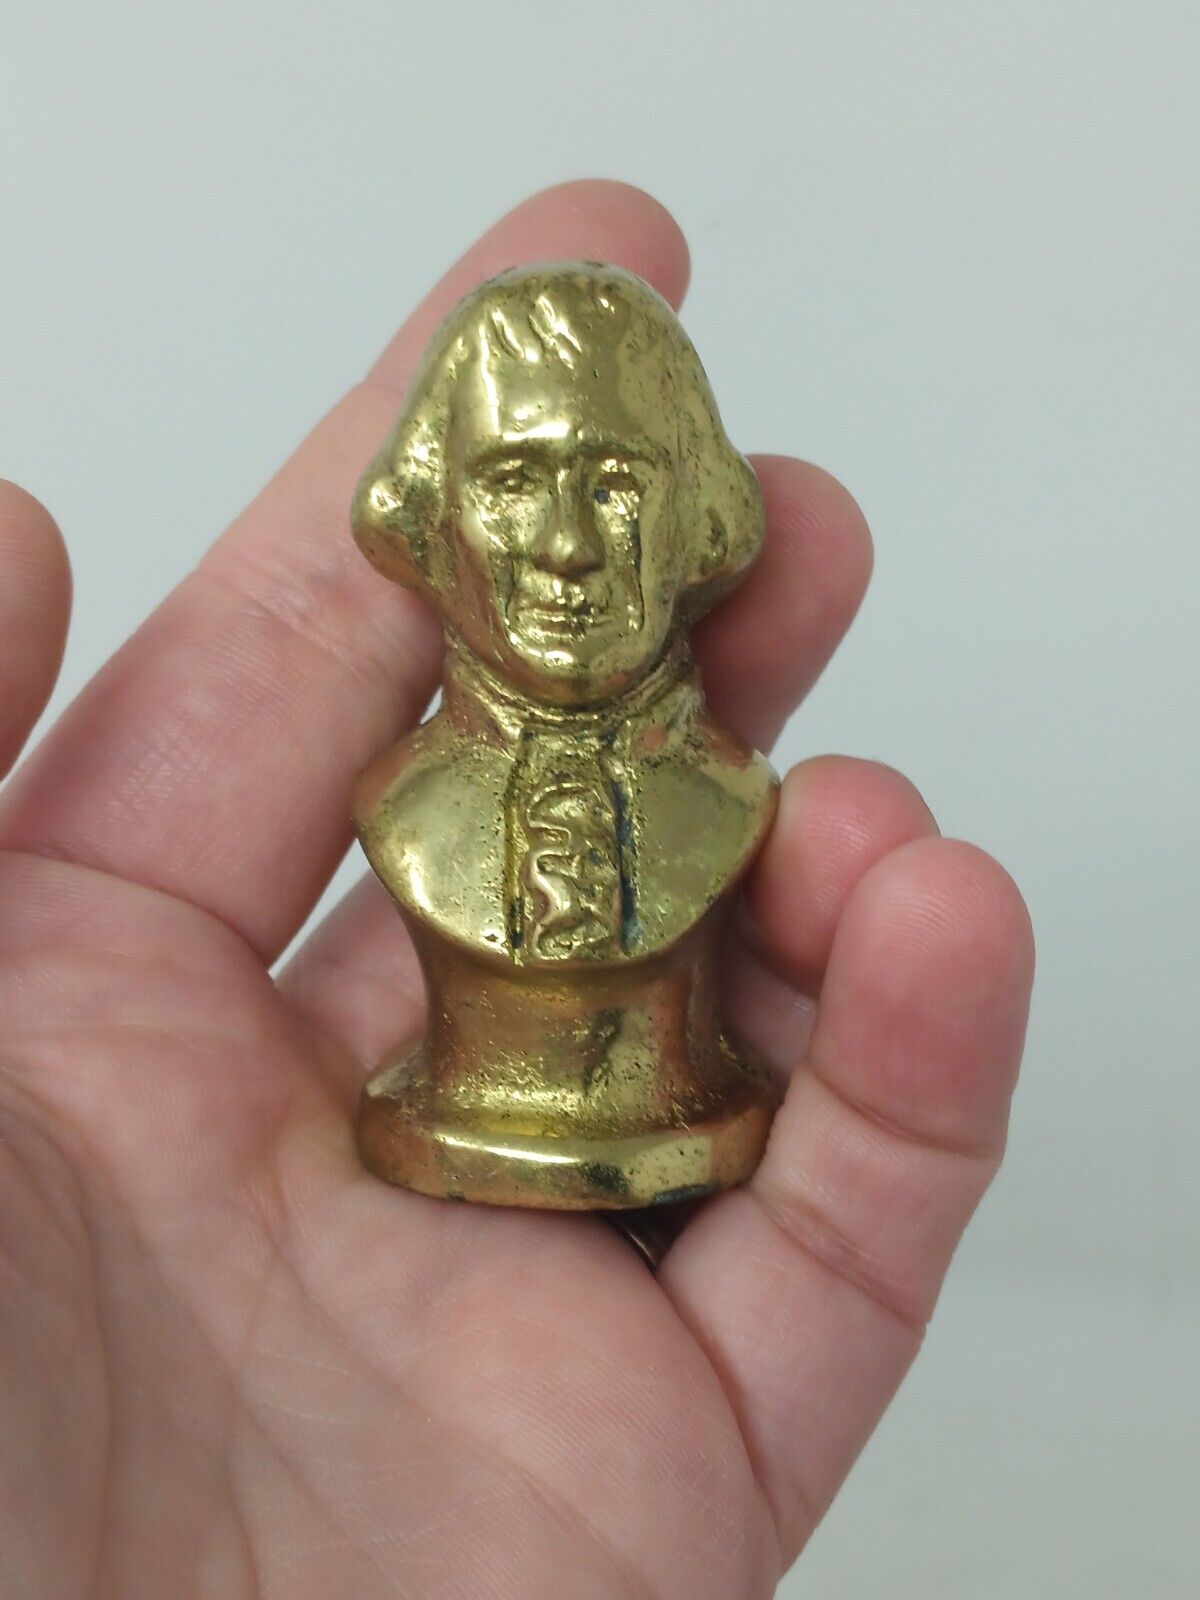 Vintage George Washington Solid Brass Figure Bust Head Figurine Miniature